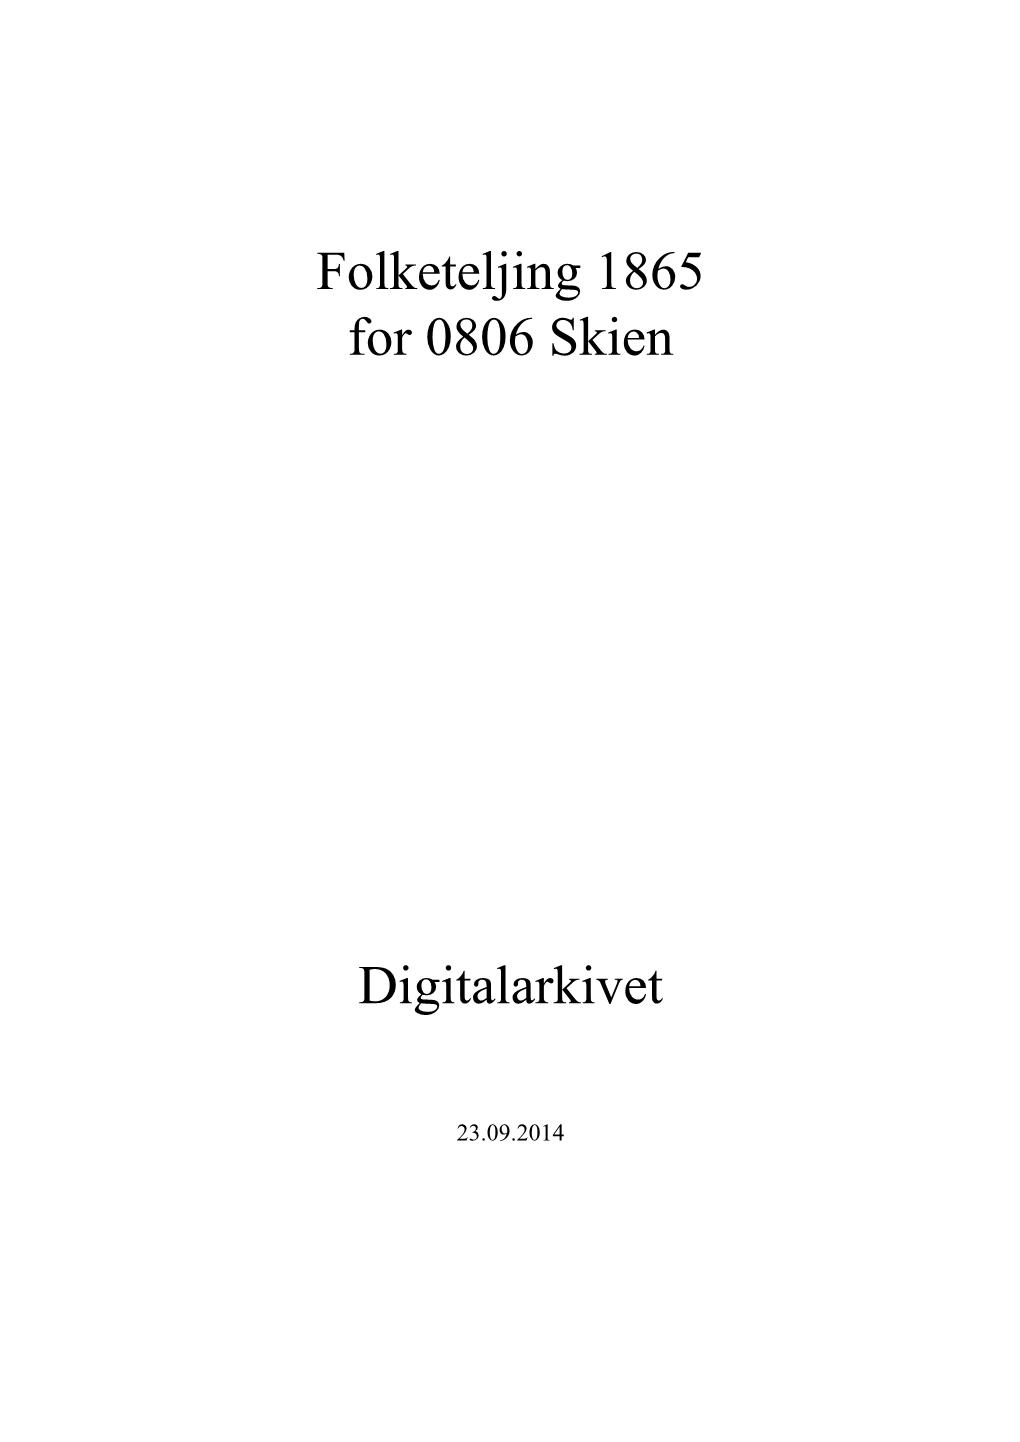 Folketeljing 1865 for 0806 Skien Digitalarkivet